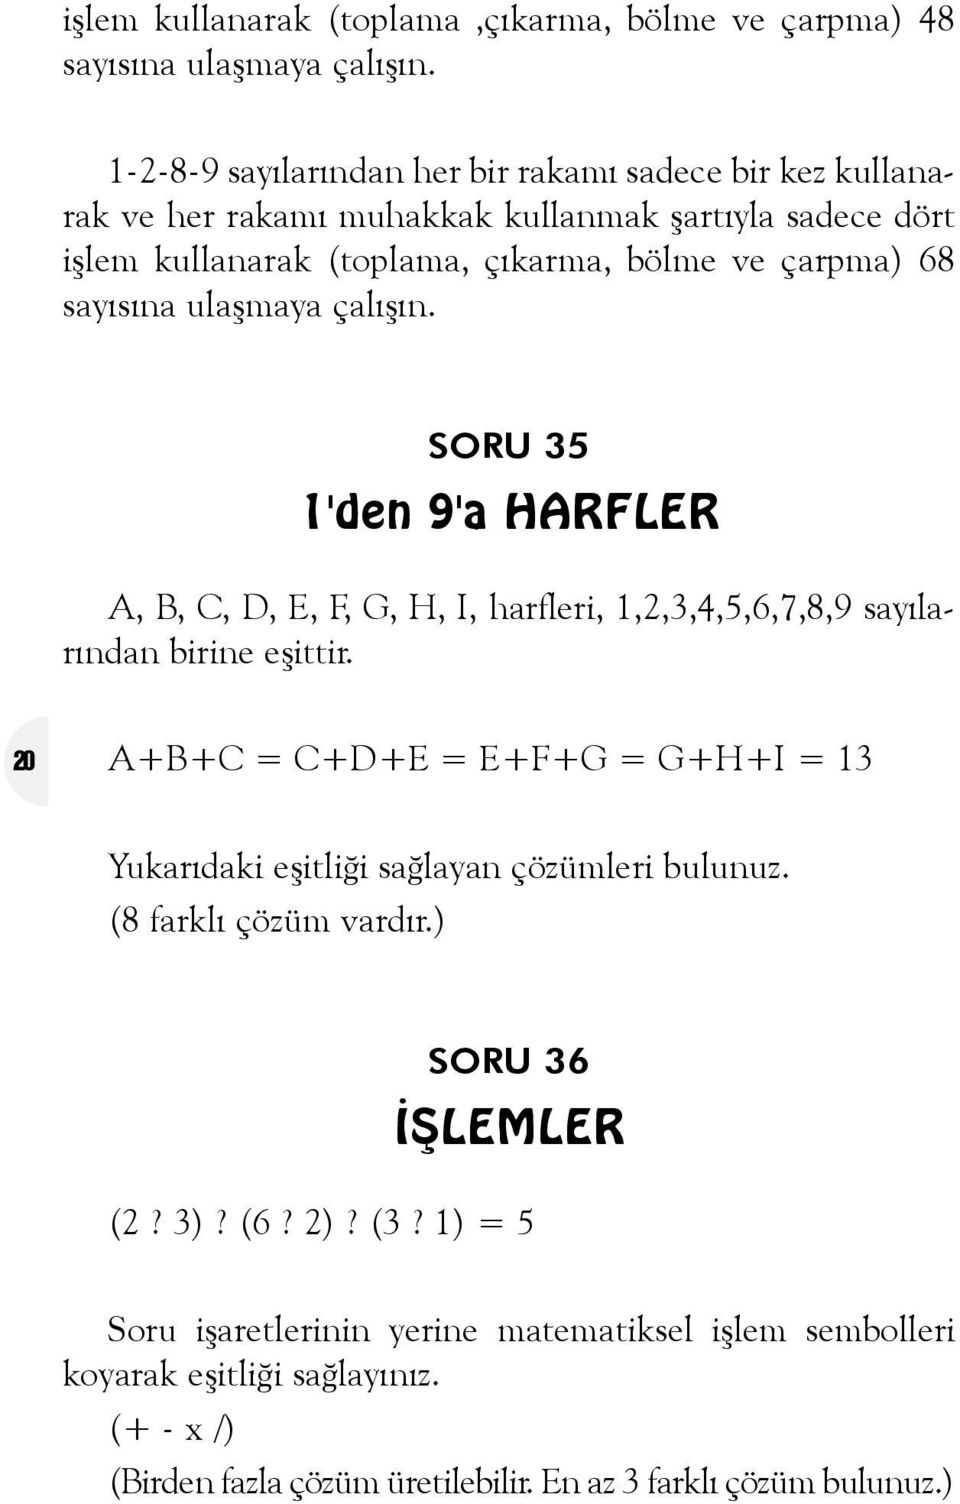 sayýsýna ulaþmaya çalýþýn. SORU 35 1'den 9'a HARFLER A, B, C, D, E, F, G, H, I, harfleri, 1,2,3,4,5,6,7,8,9 sayýlarýndan birine eþittir.